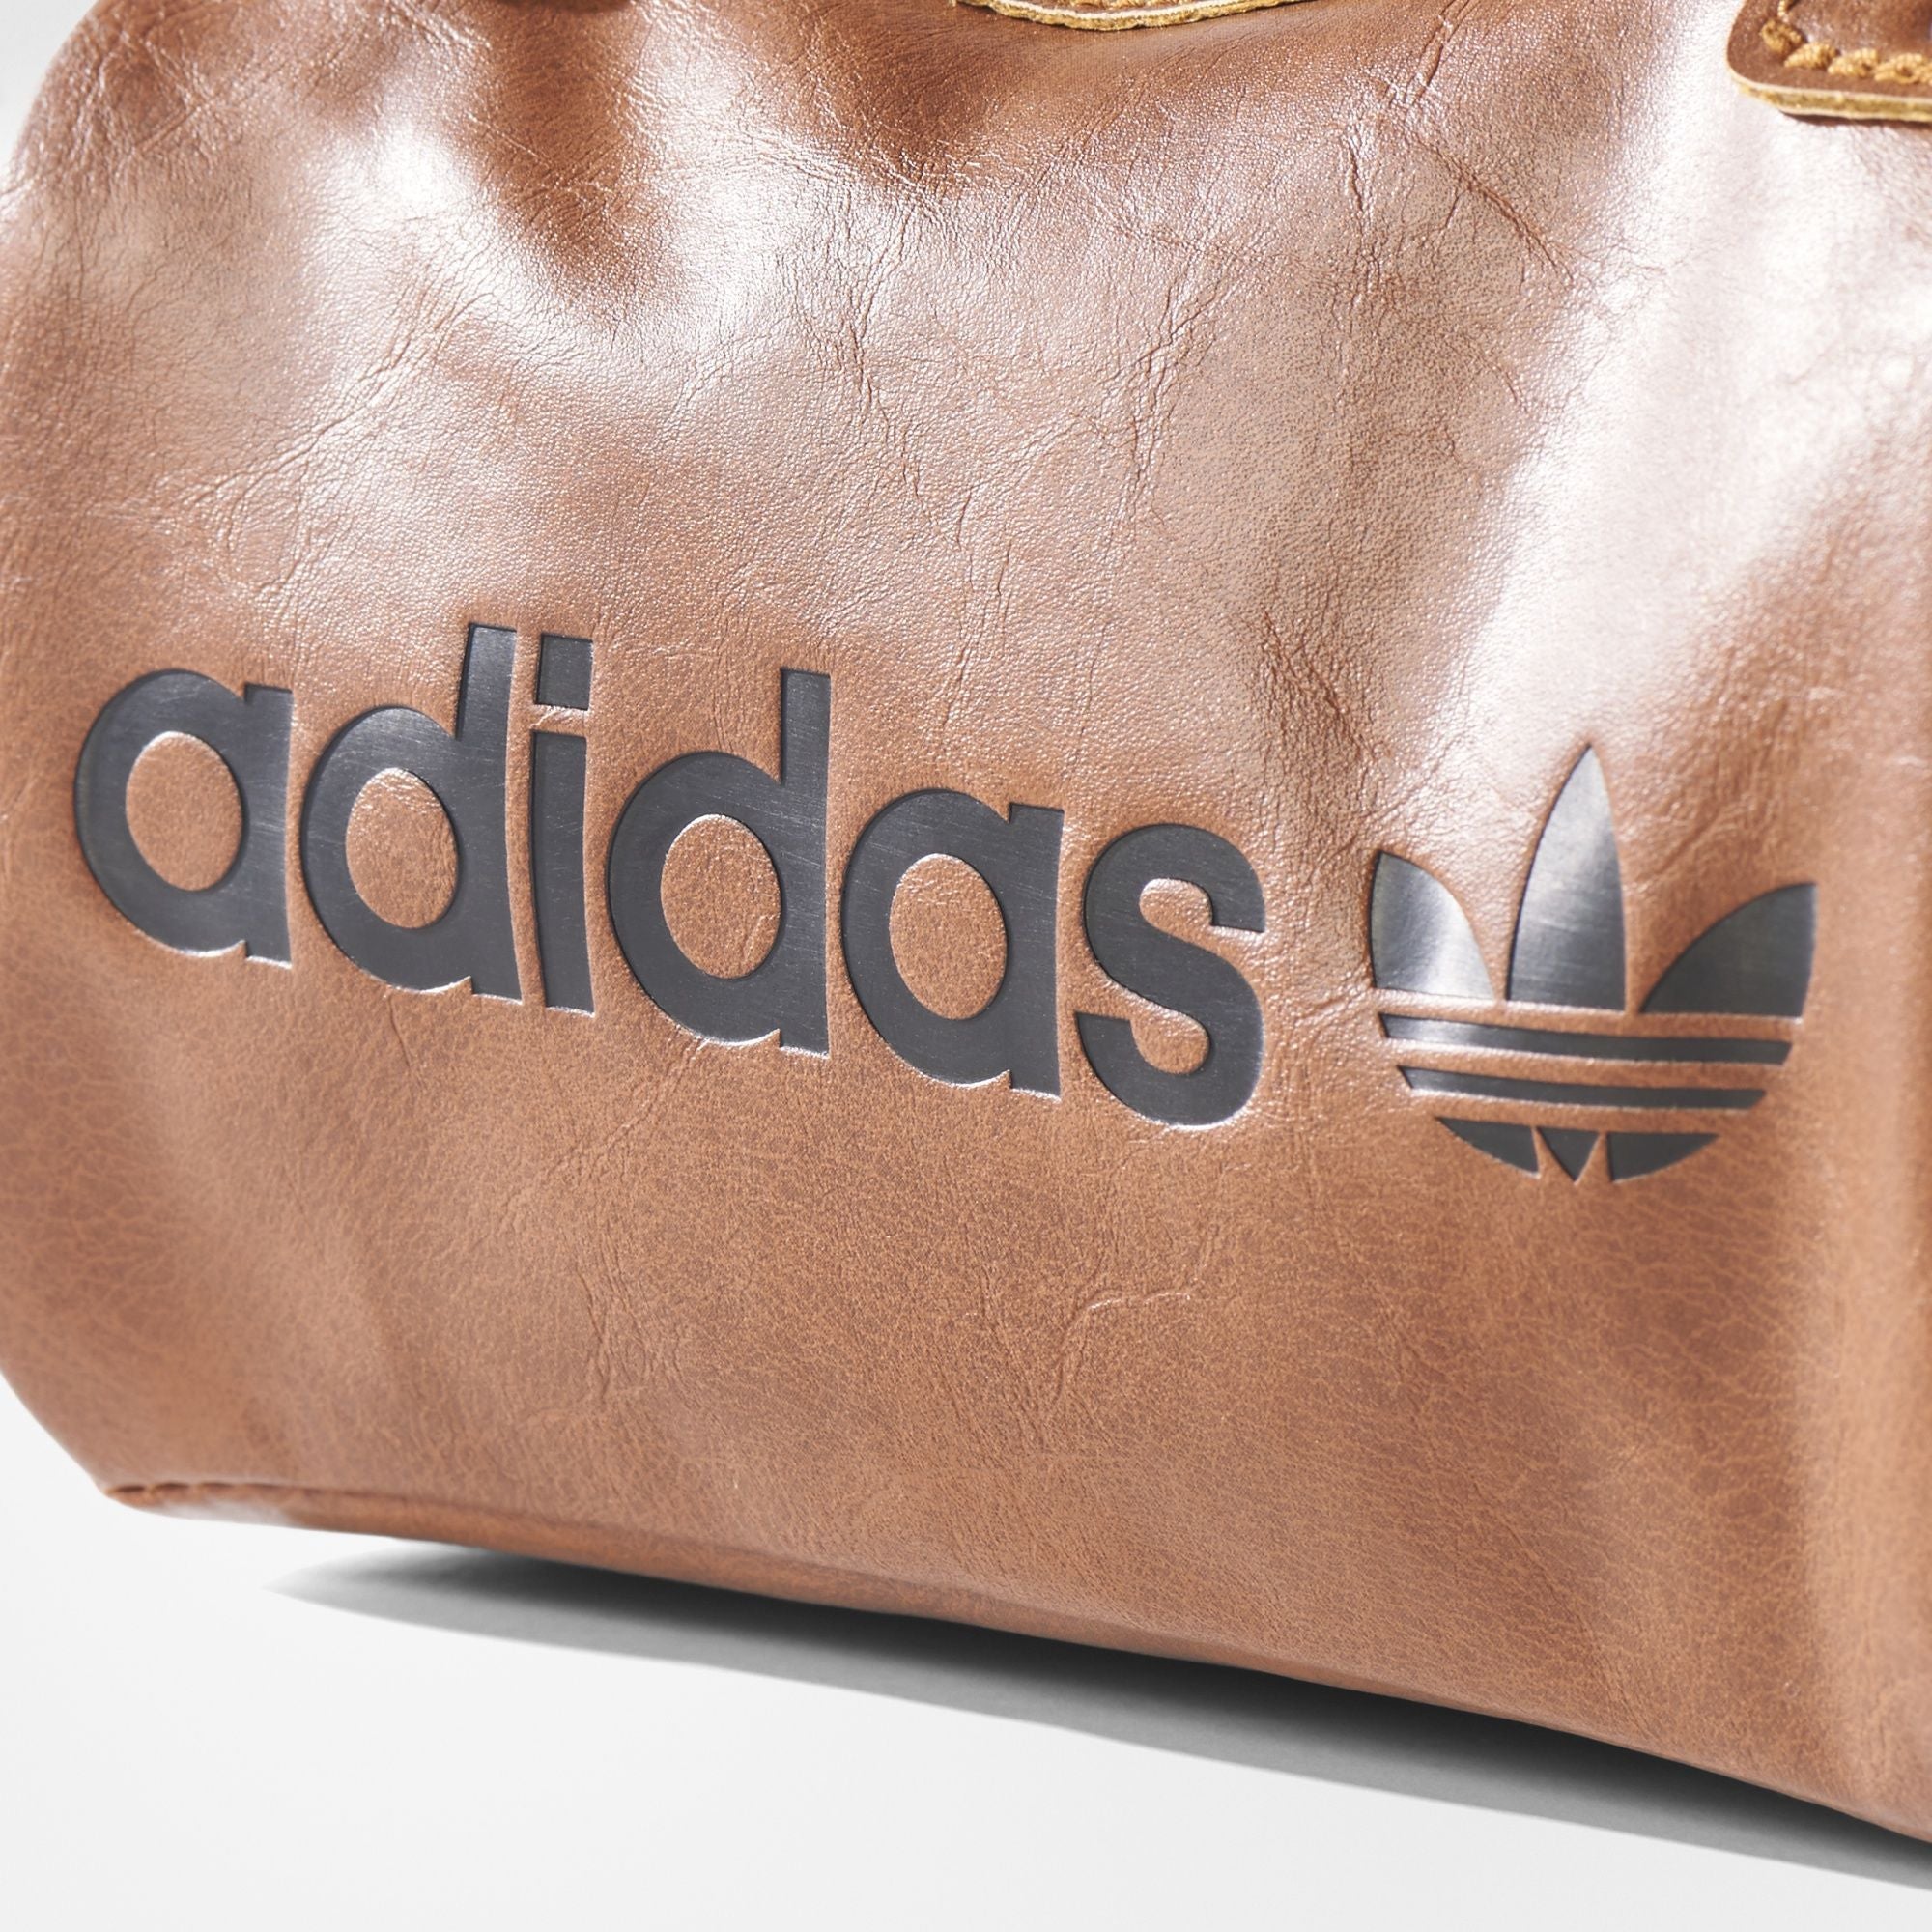 Adidas Spezial Archive Bag - ENStest